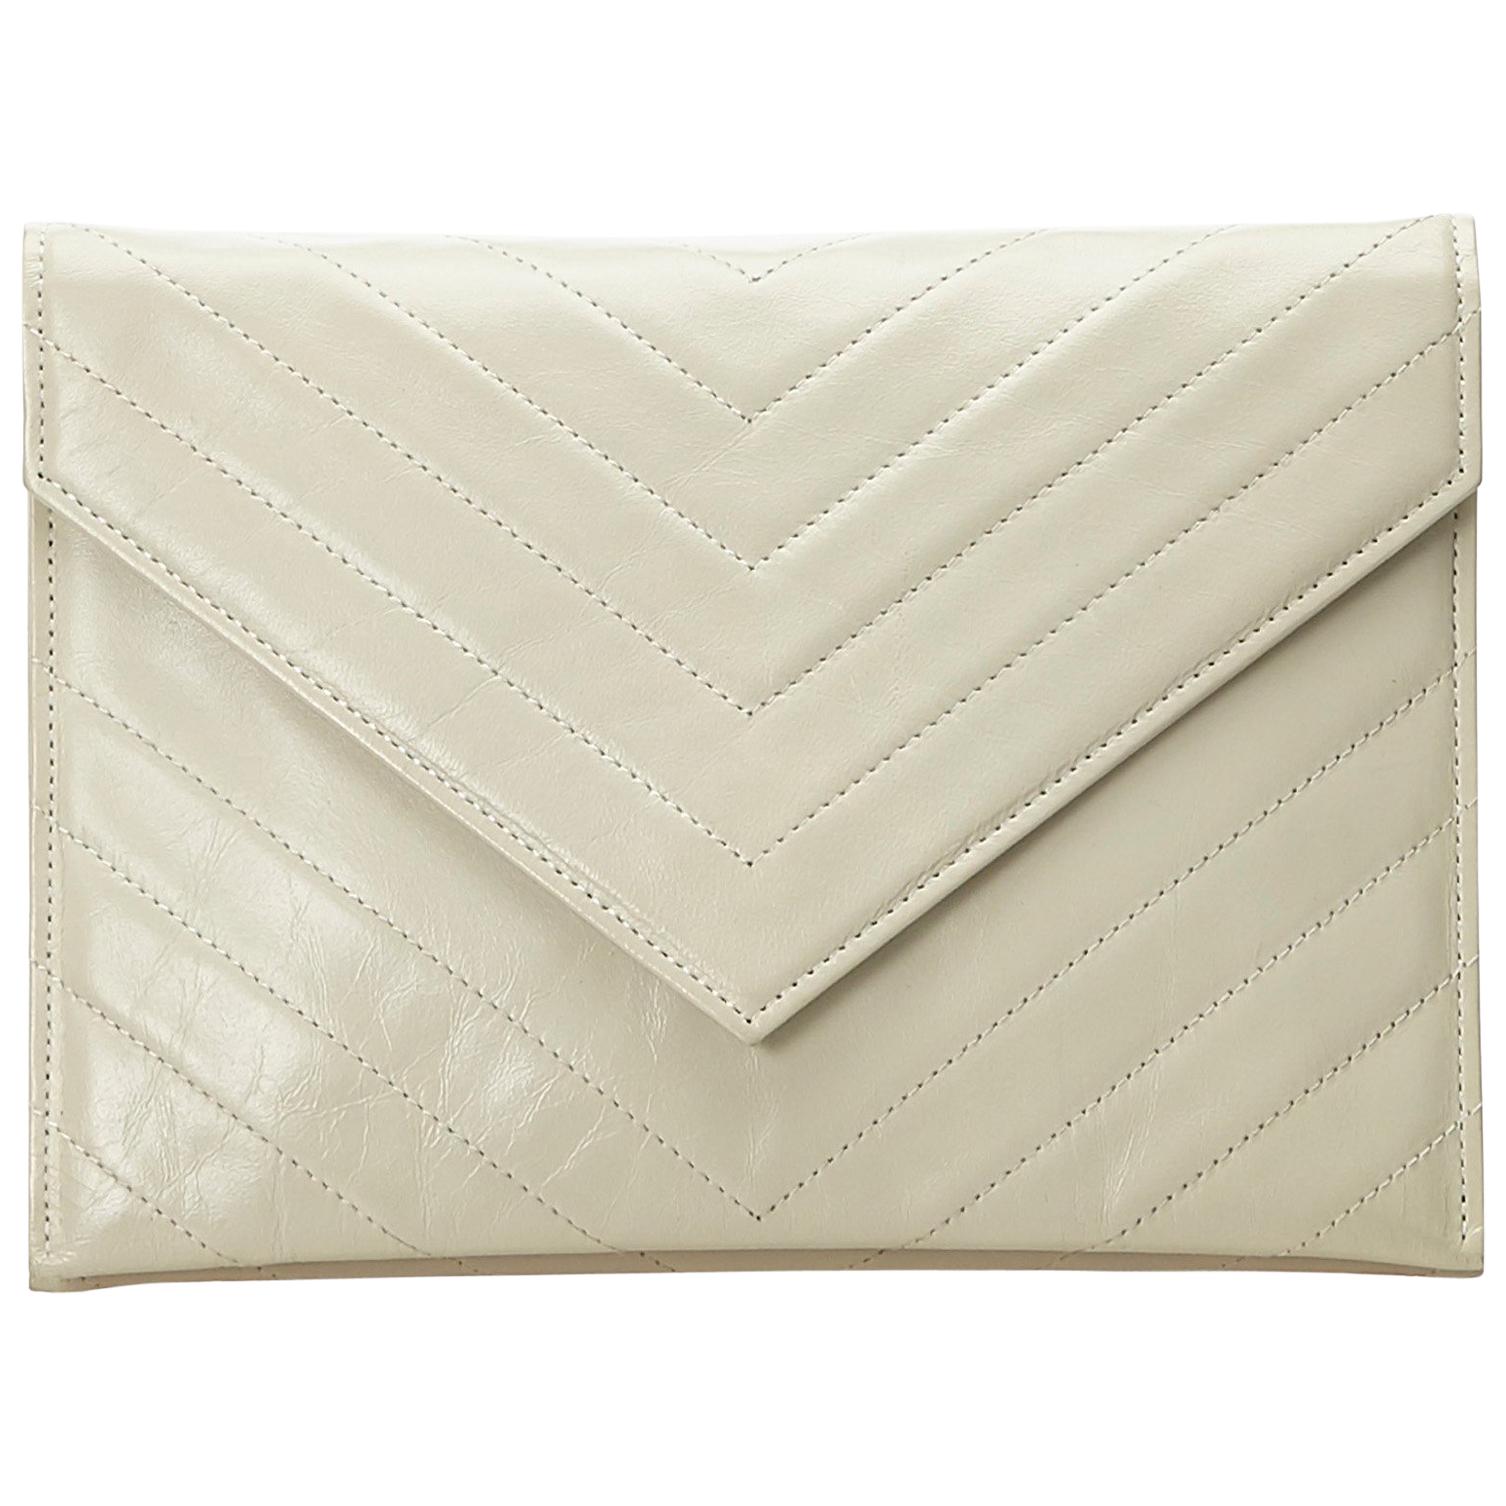 YSL White Leather Clutch Bag